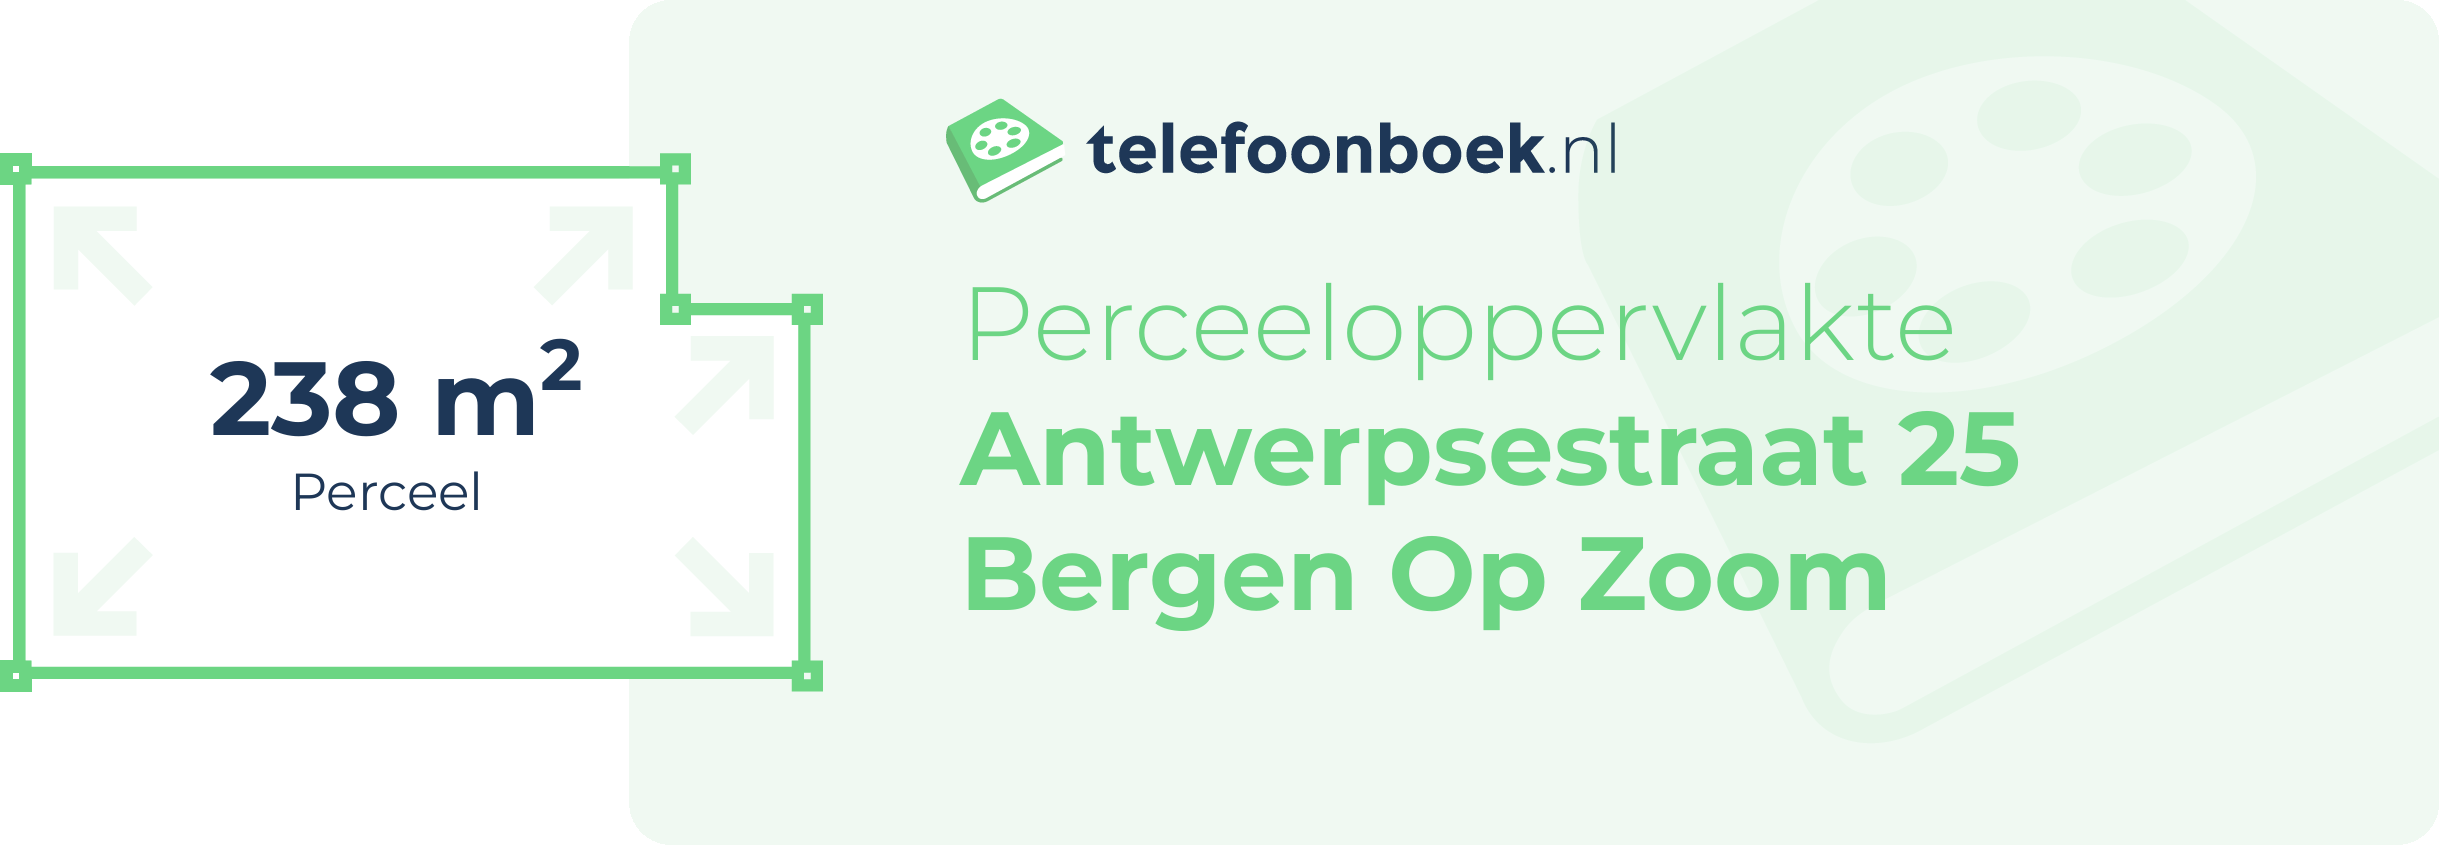 Perceeloppervlakte Antwerpsestraat 25 Bergen Op Zoom